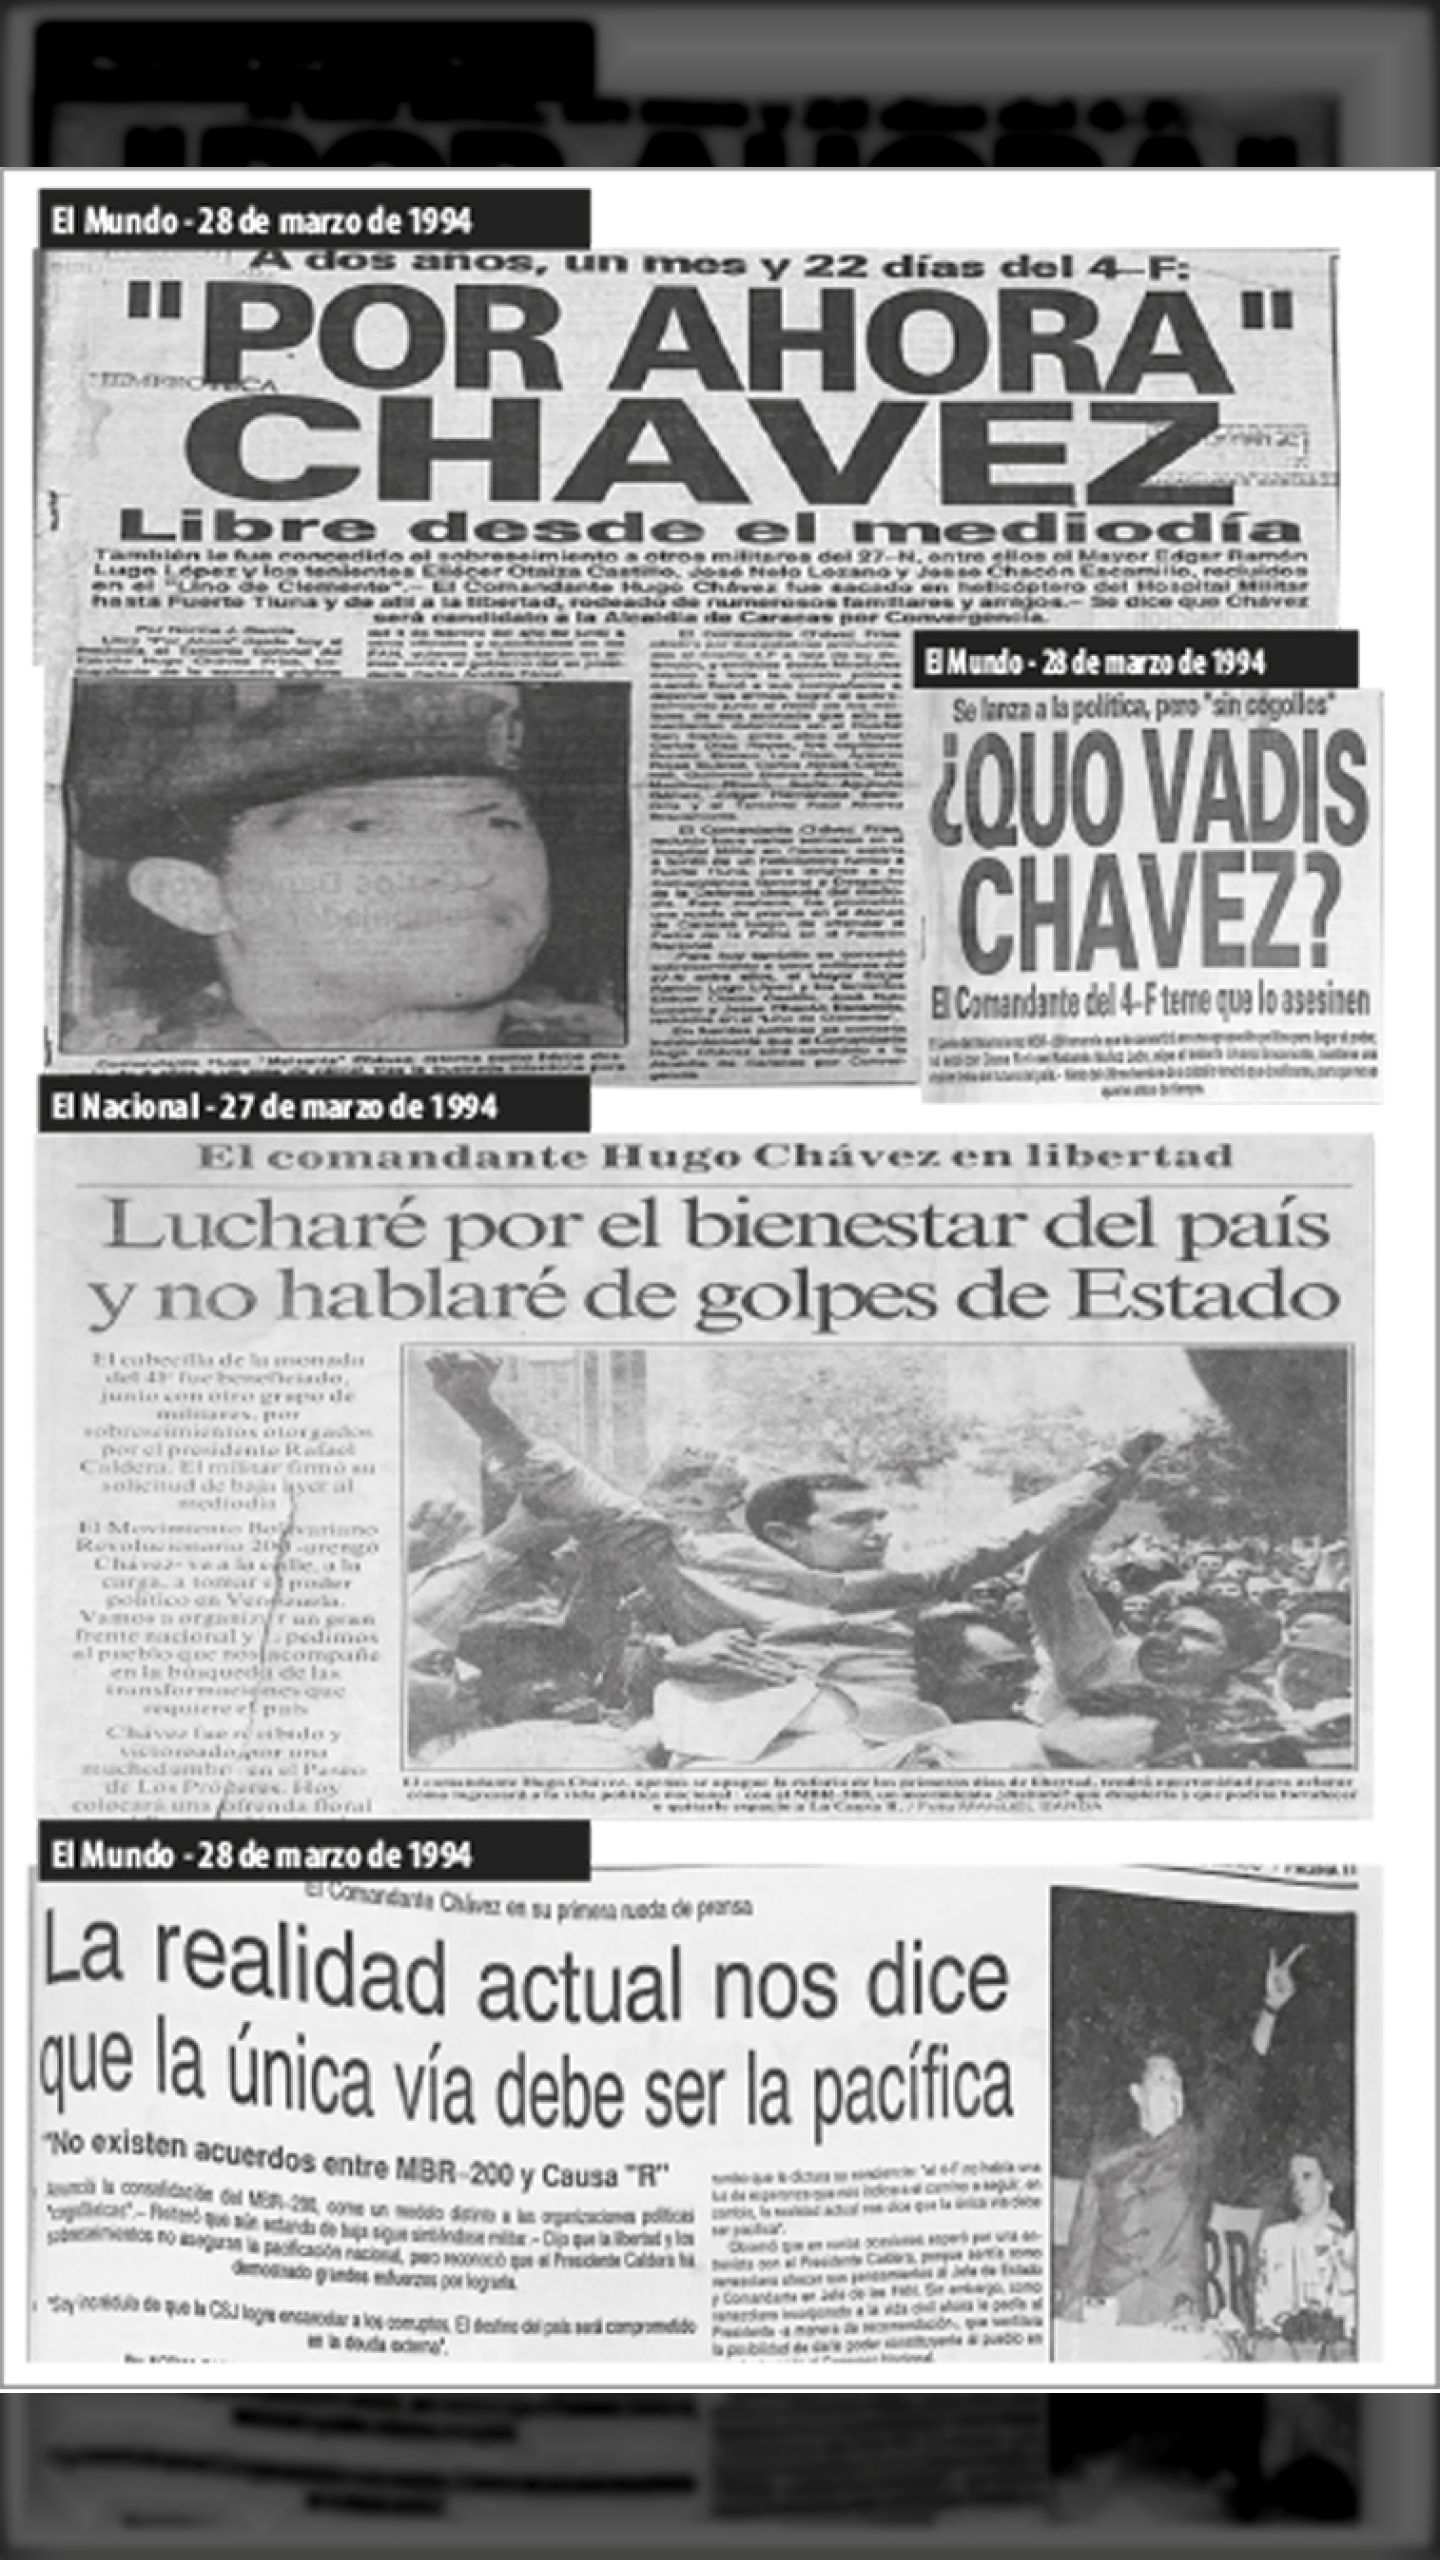 CHÁVEZ EN LIBERTAD (El Nacional / Últimas Noticias / El Universal, 28 de marzo de 1994)